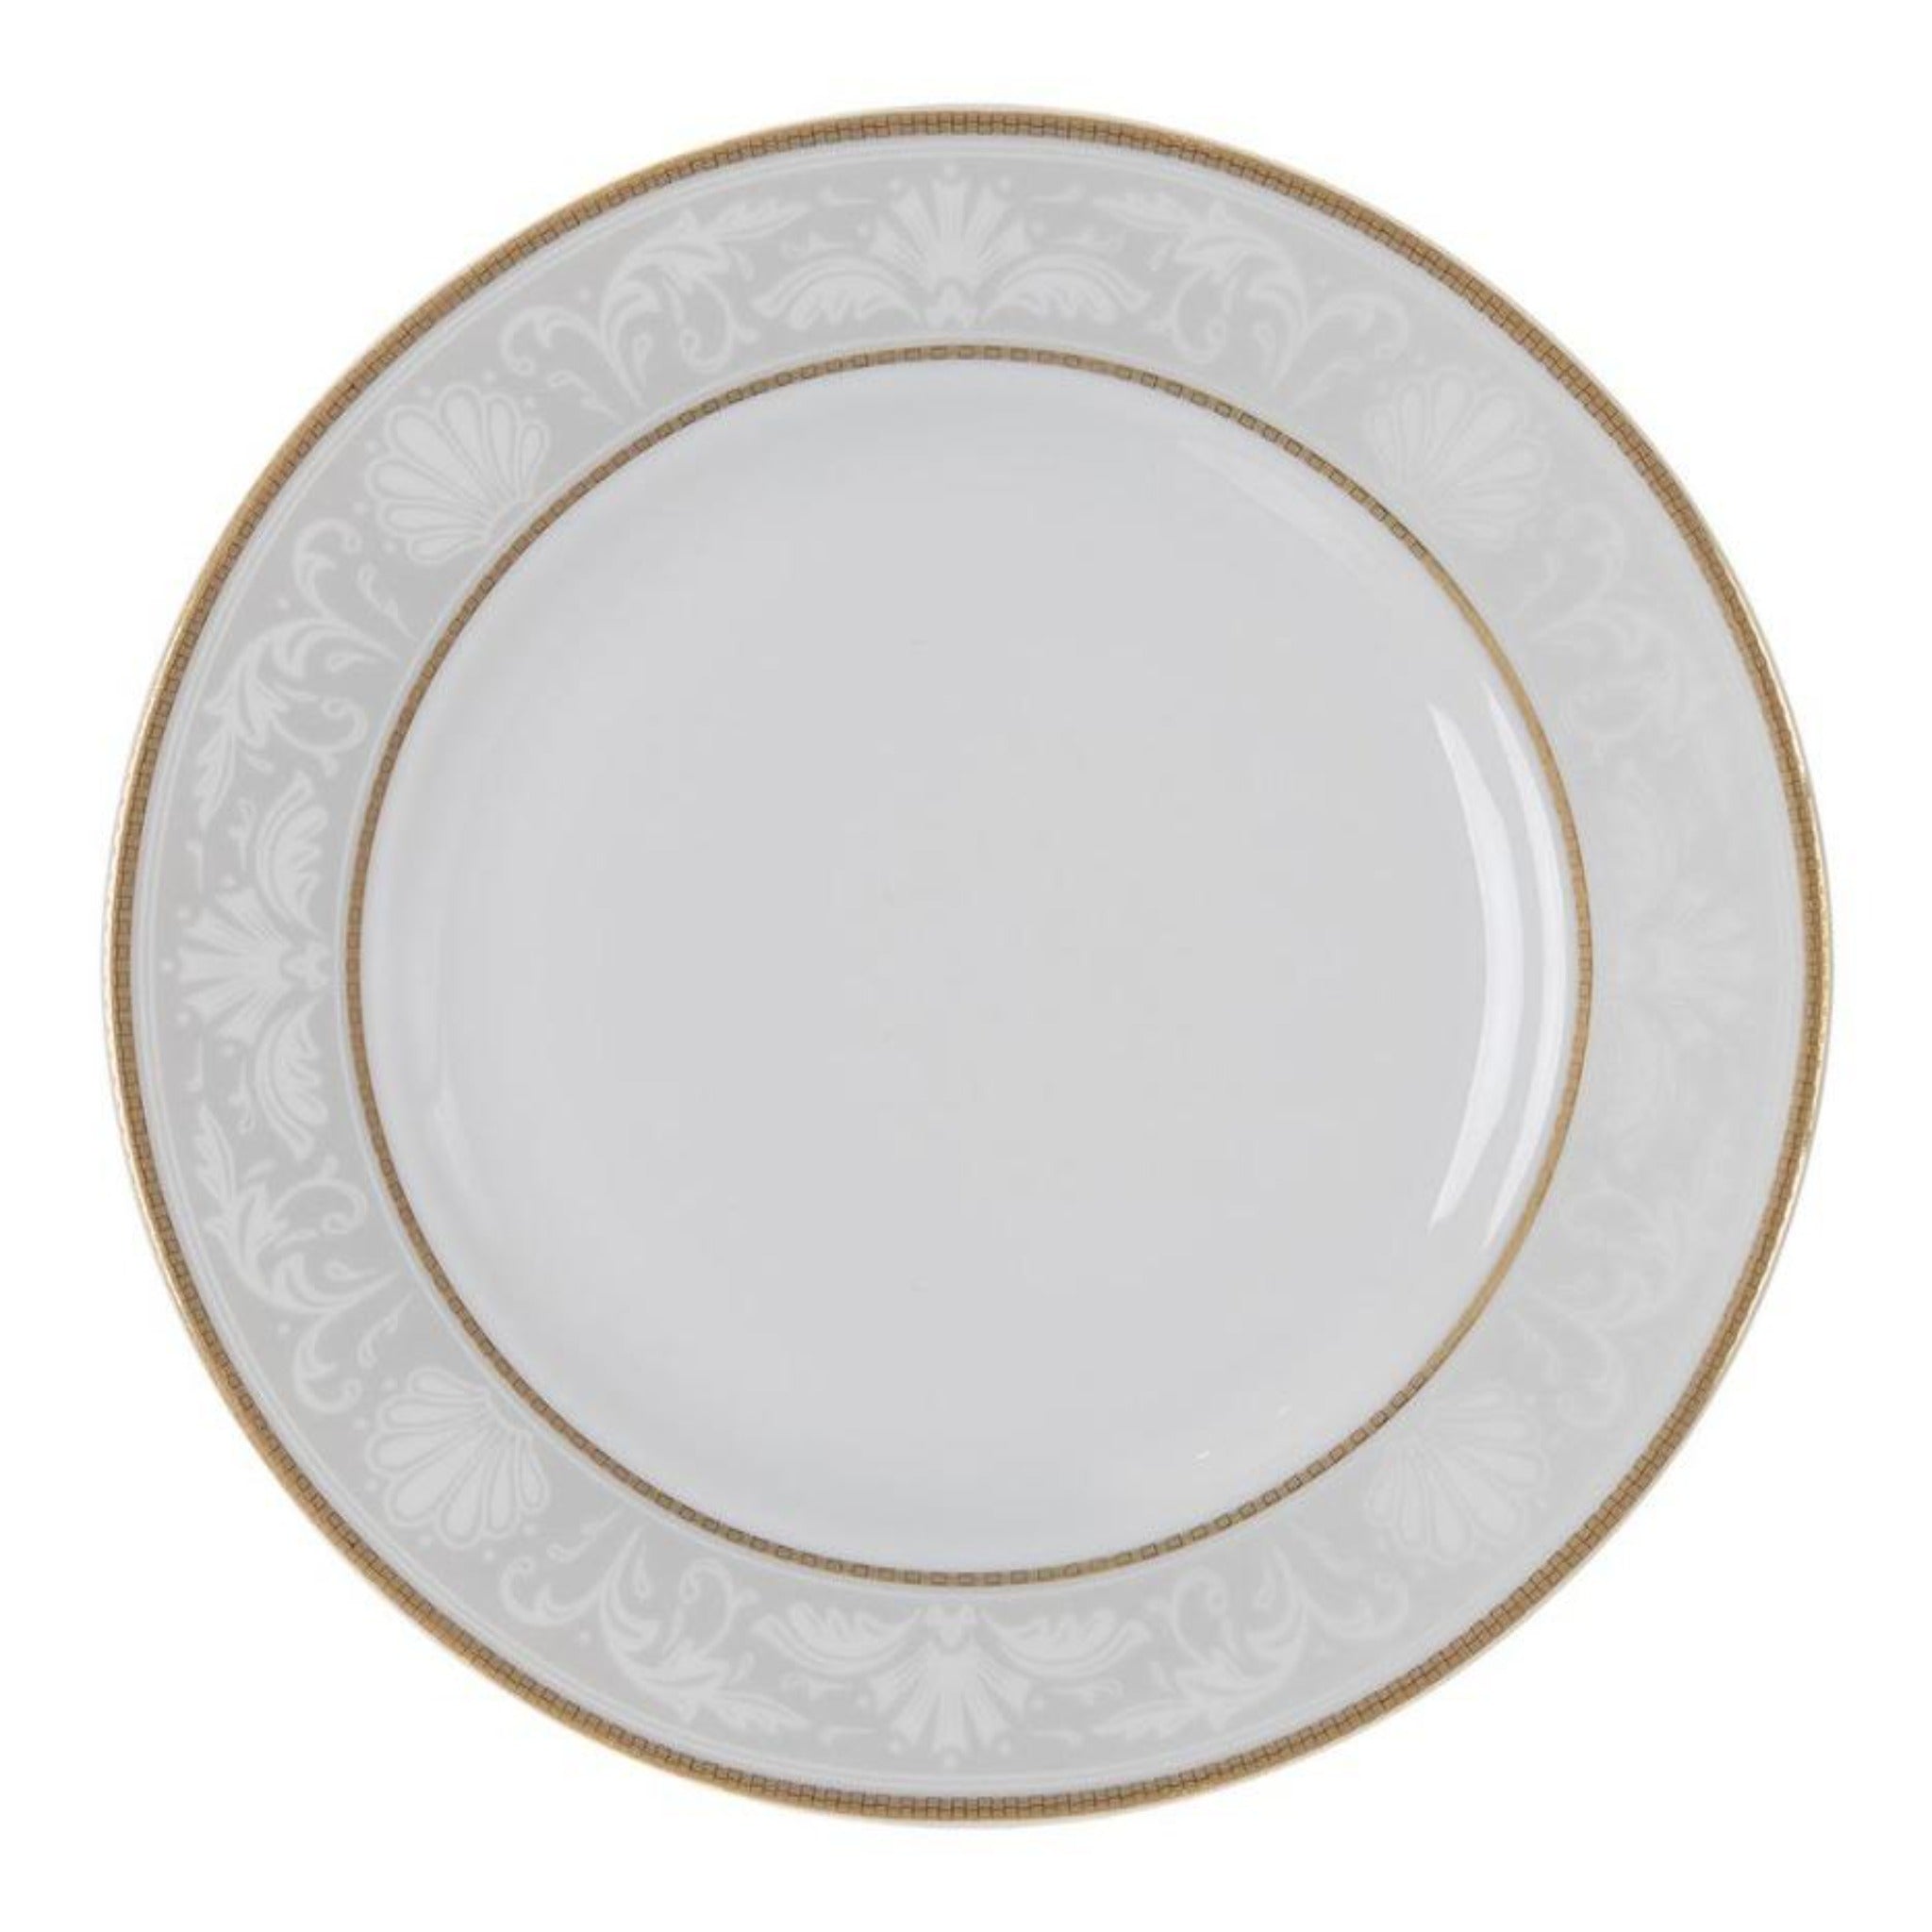 Falkenporzellan - Dinner Set 112 Pieces - Porcelain - Light Silver & Gold - 1300061